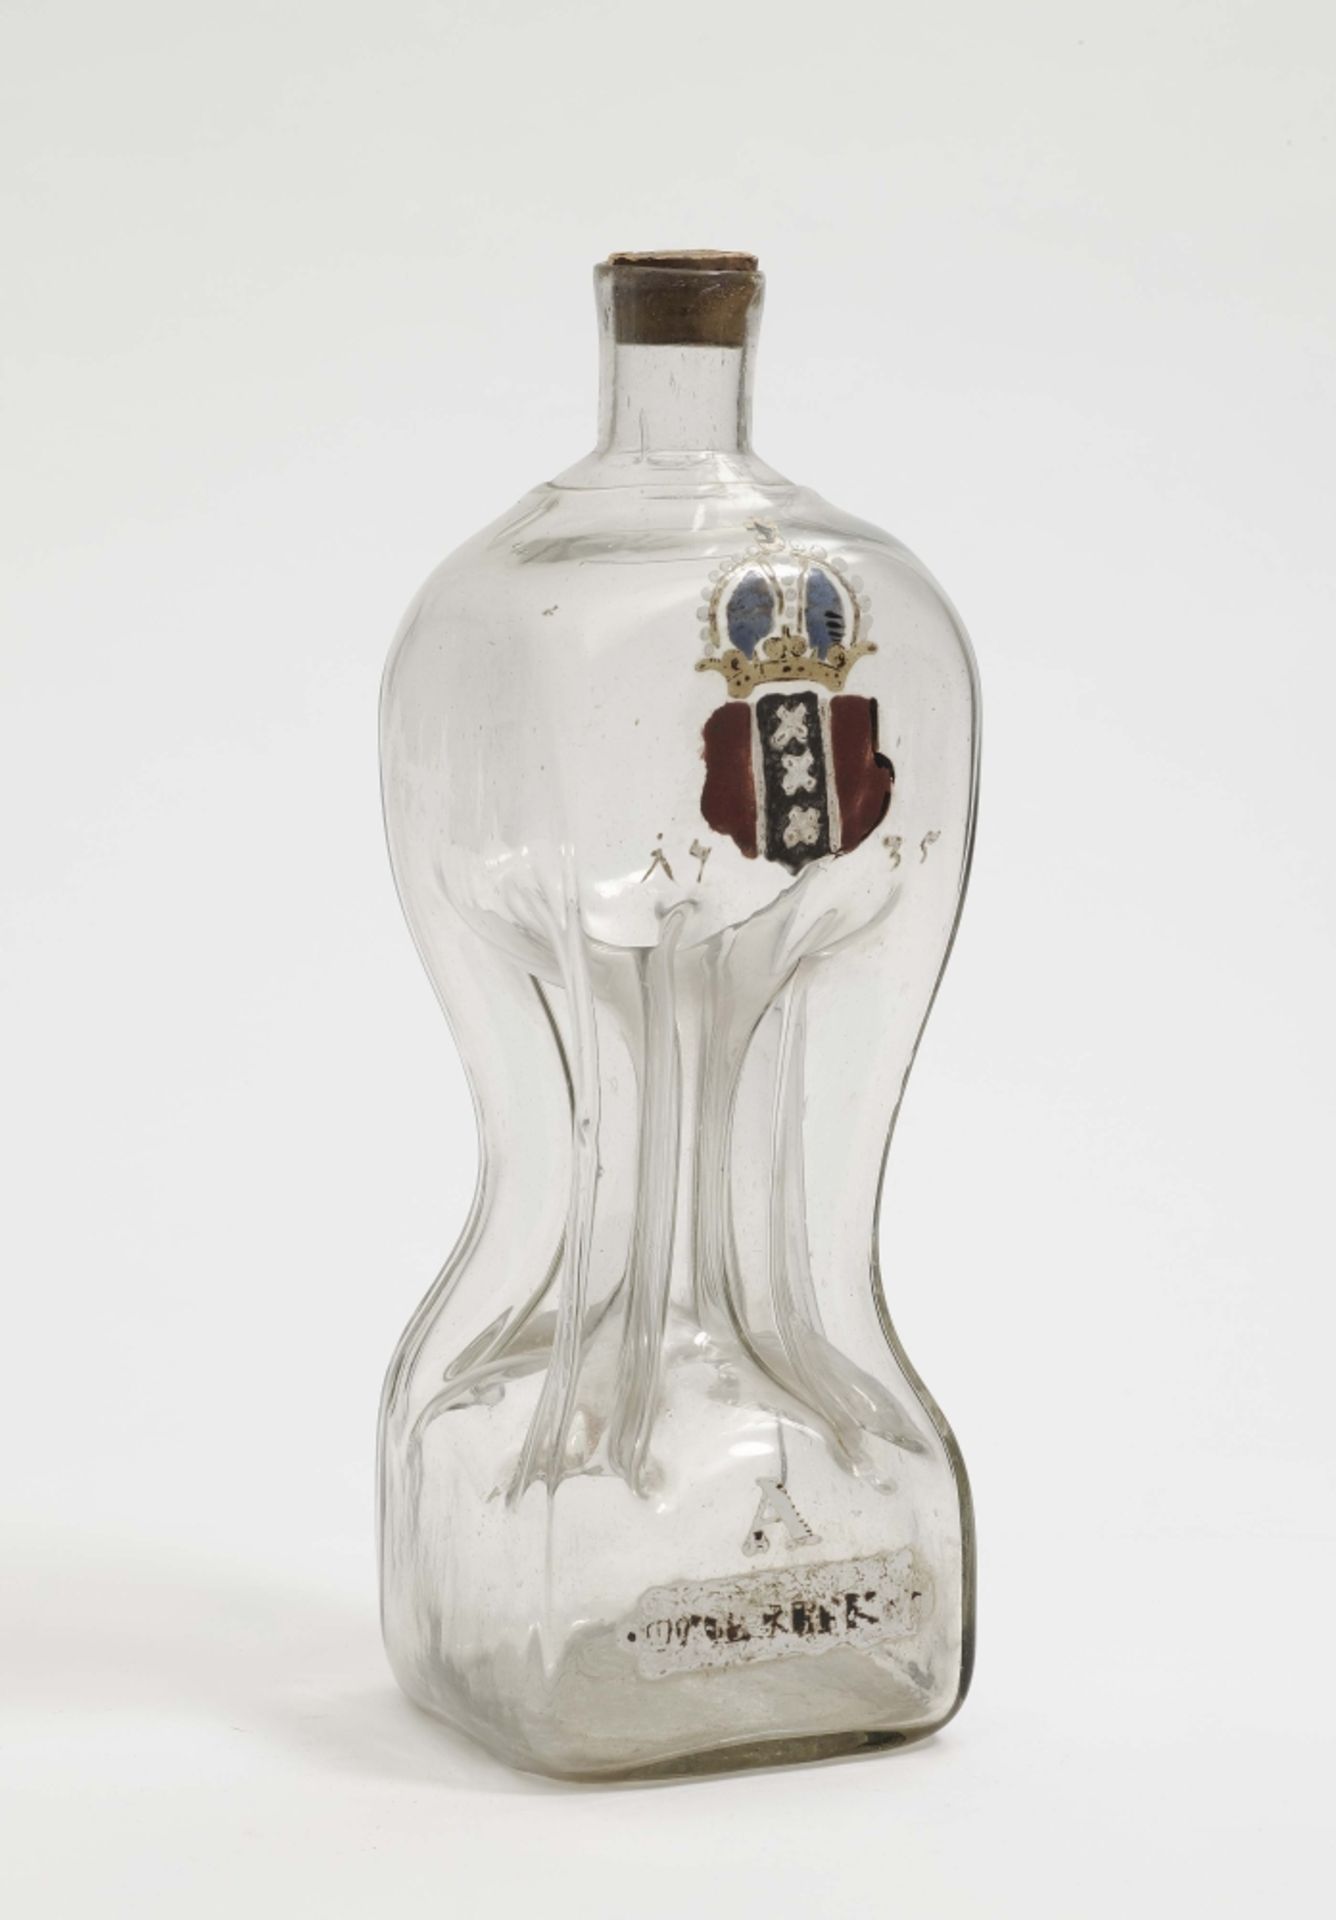 Kuttrolf Datiert 1735 Farbloses Glas. Mittig eingezogene Flasche mit fünf Kanälen. Frontal bunter